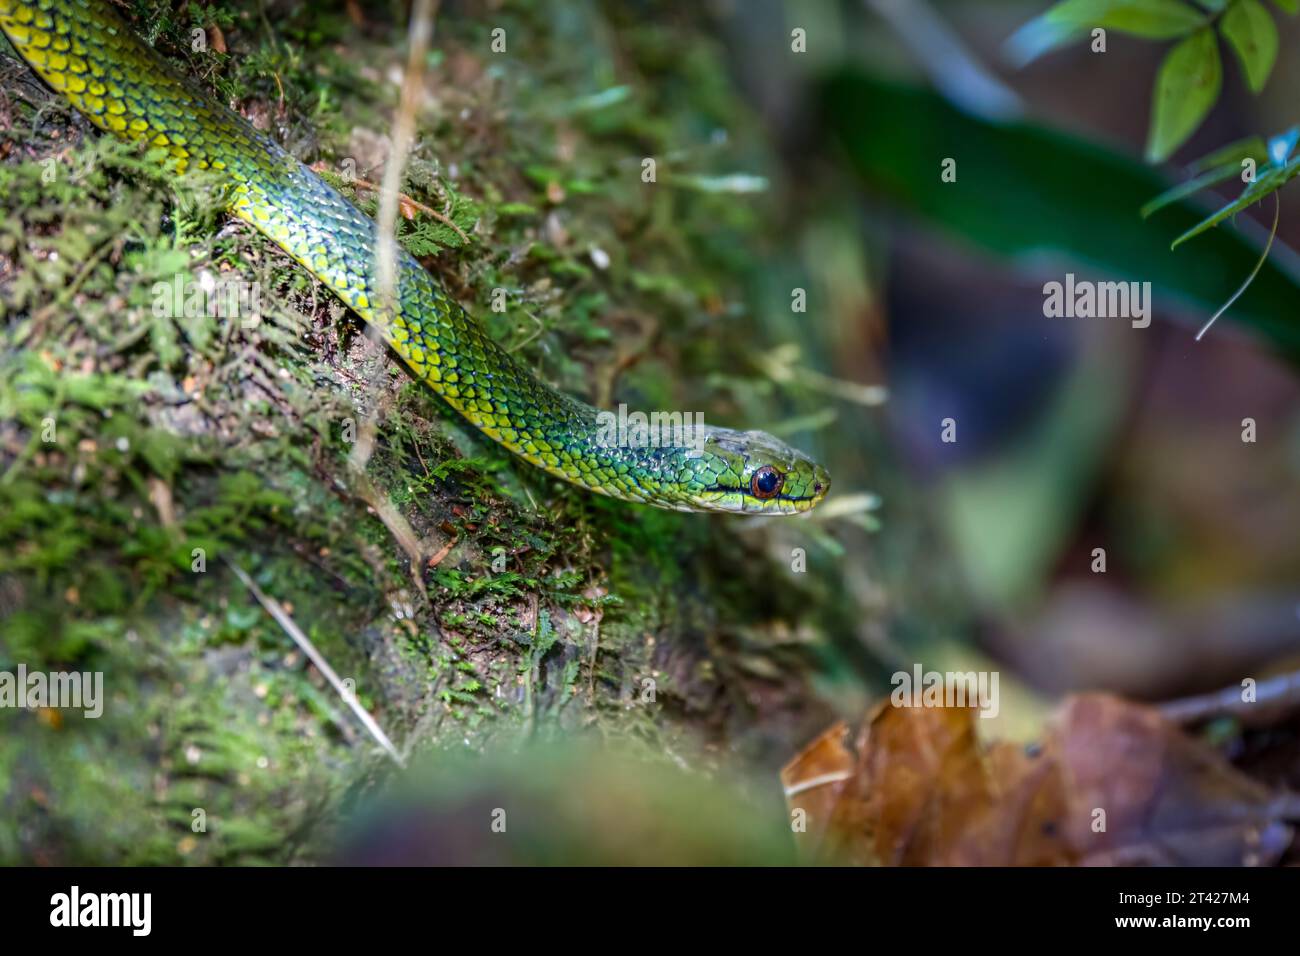 Gros plan d'un serpent coureur vert brésilien, forêt atlantique, Itatiaia, Brésil Banque D'Images